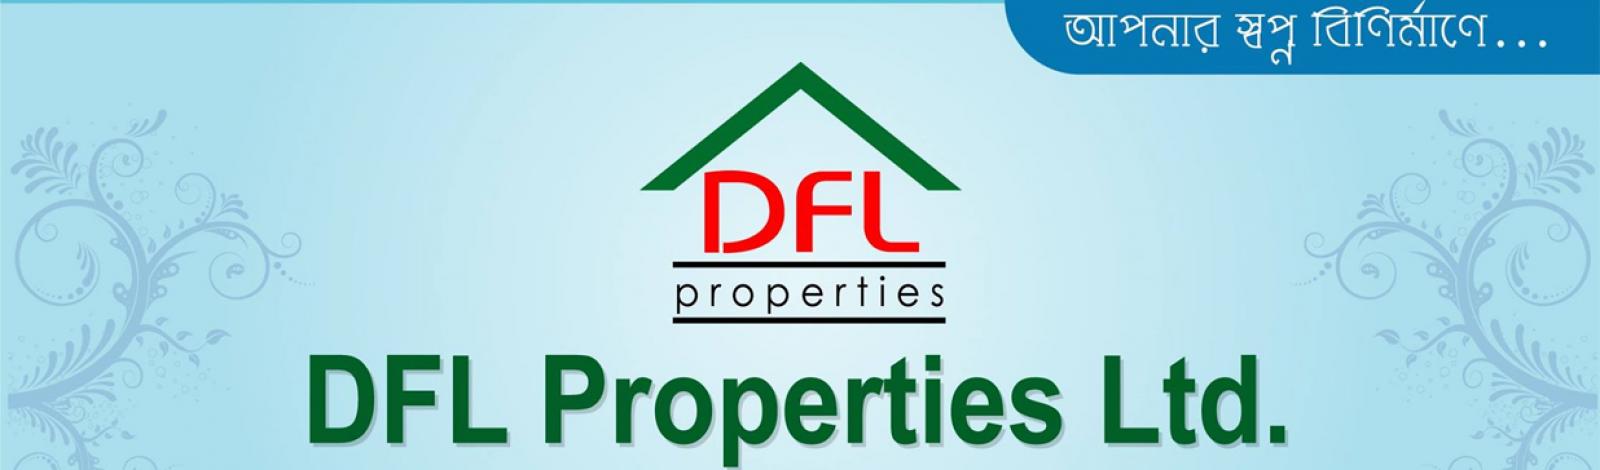 DFL Properties Ltd banner